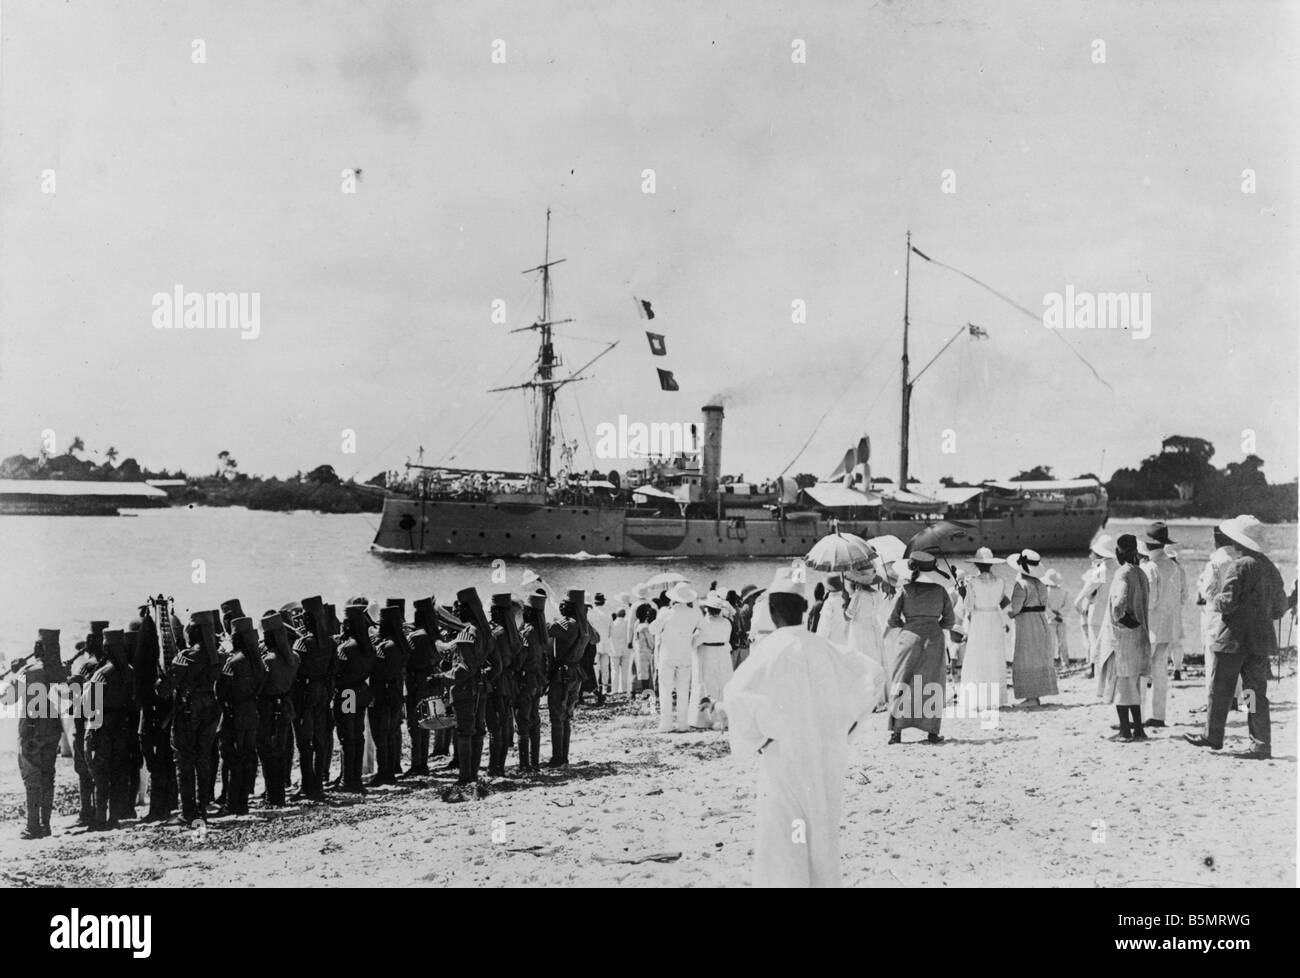 9AF 1914 0 0 A8 1 E S M S Seeadler Photo Dar es Salaam Tanzanie aujourd'hui Africa Orientale allemande comme colonie allemande 1884 1920 S M S Seeadle Banque D'Images